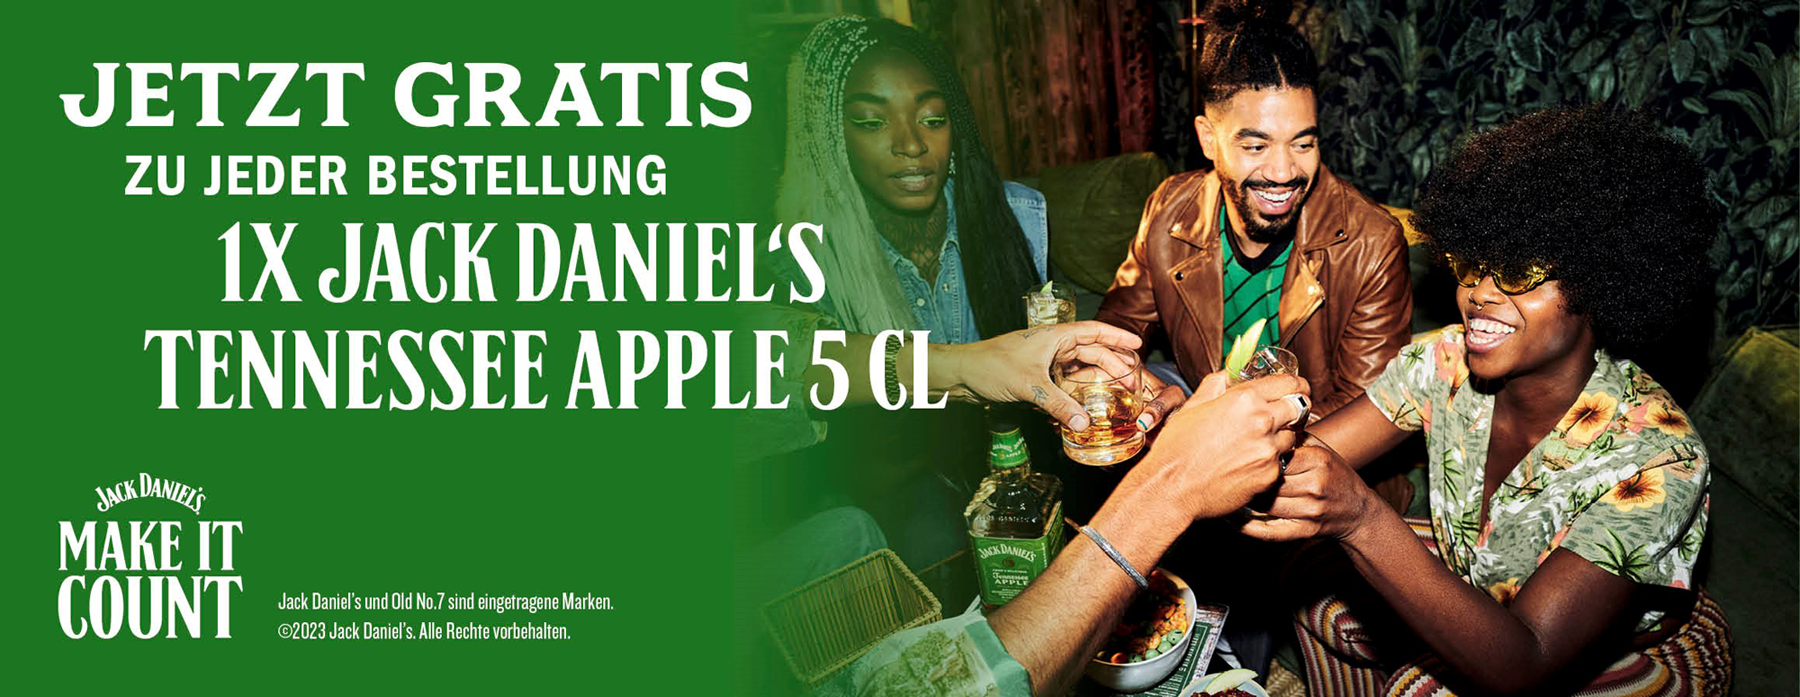 Kostenloser JACK DANIEL'S Tennessee Apple 5cl zu jeder JACK DANIEL'S Bestellung